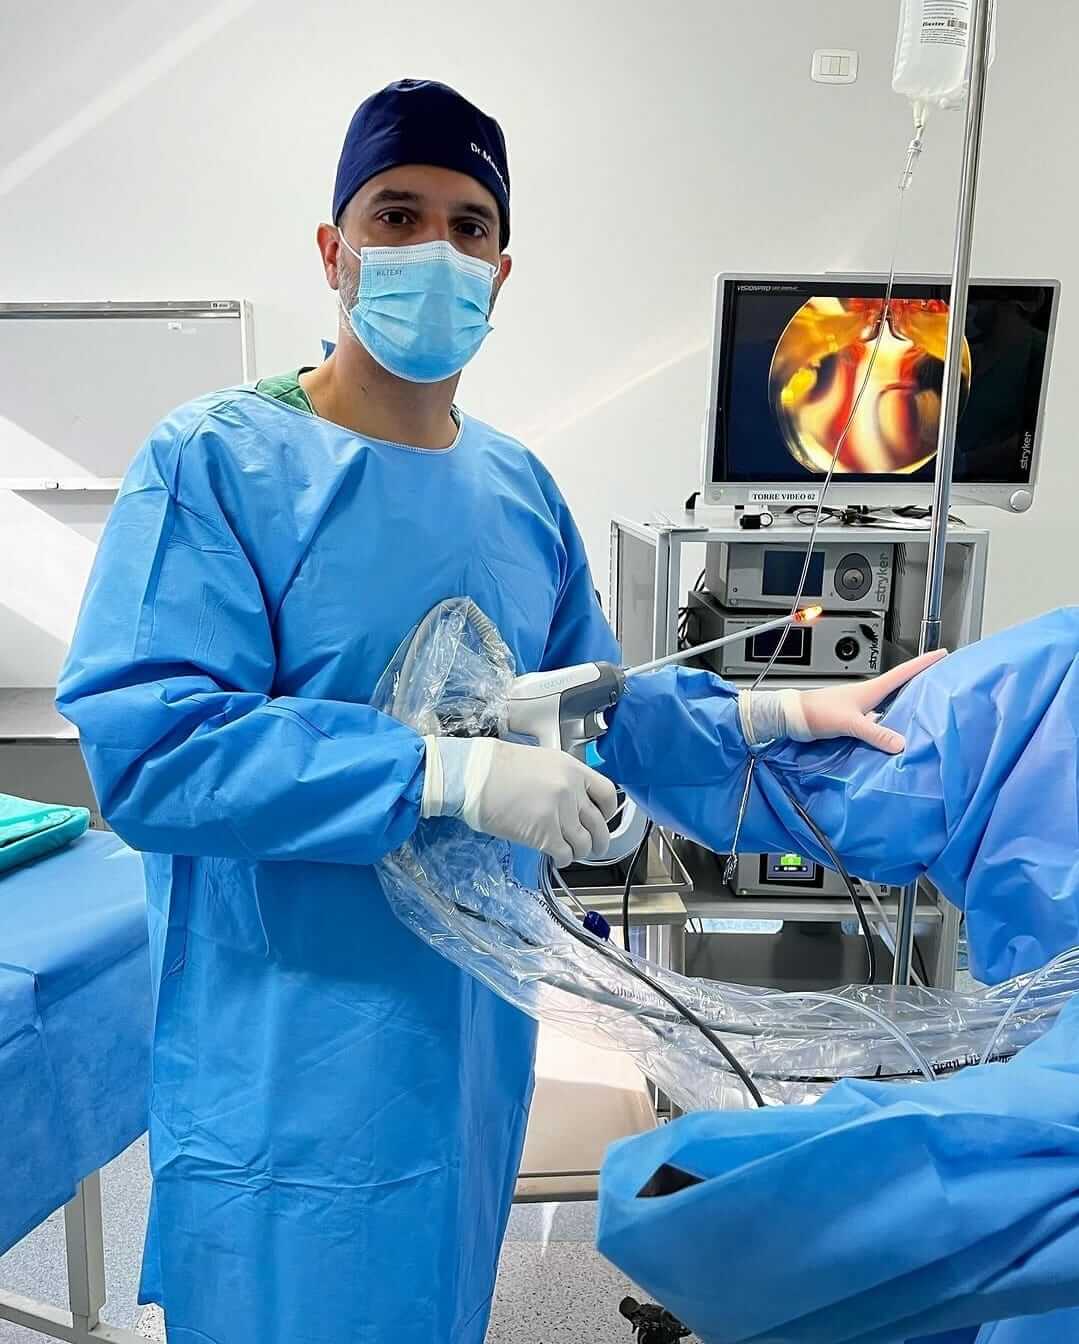 Cirurgia Rezum em Maringá: Técnica Eficaz para Hiperplasia Benigna da Próstata